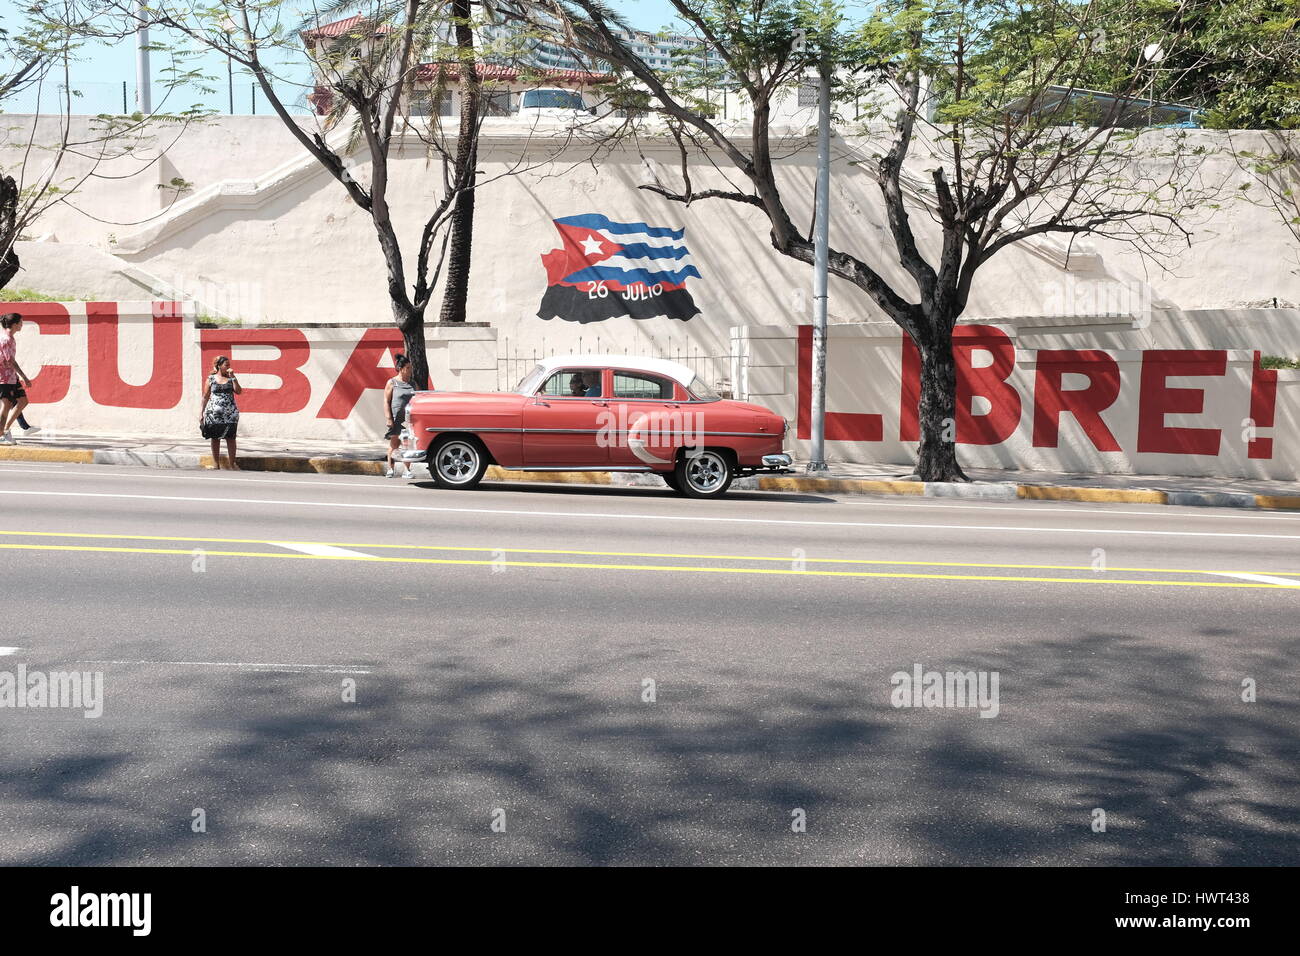 Vintage car Cuba Libre 2017 Stock Photo